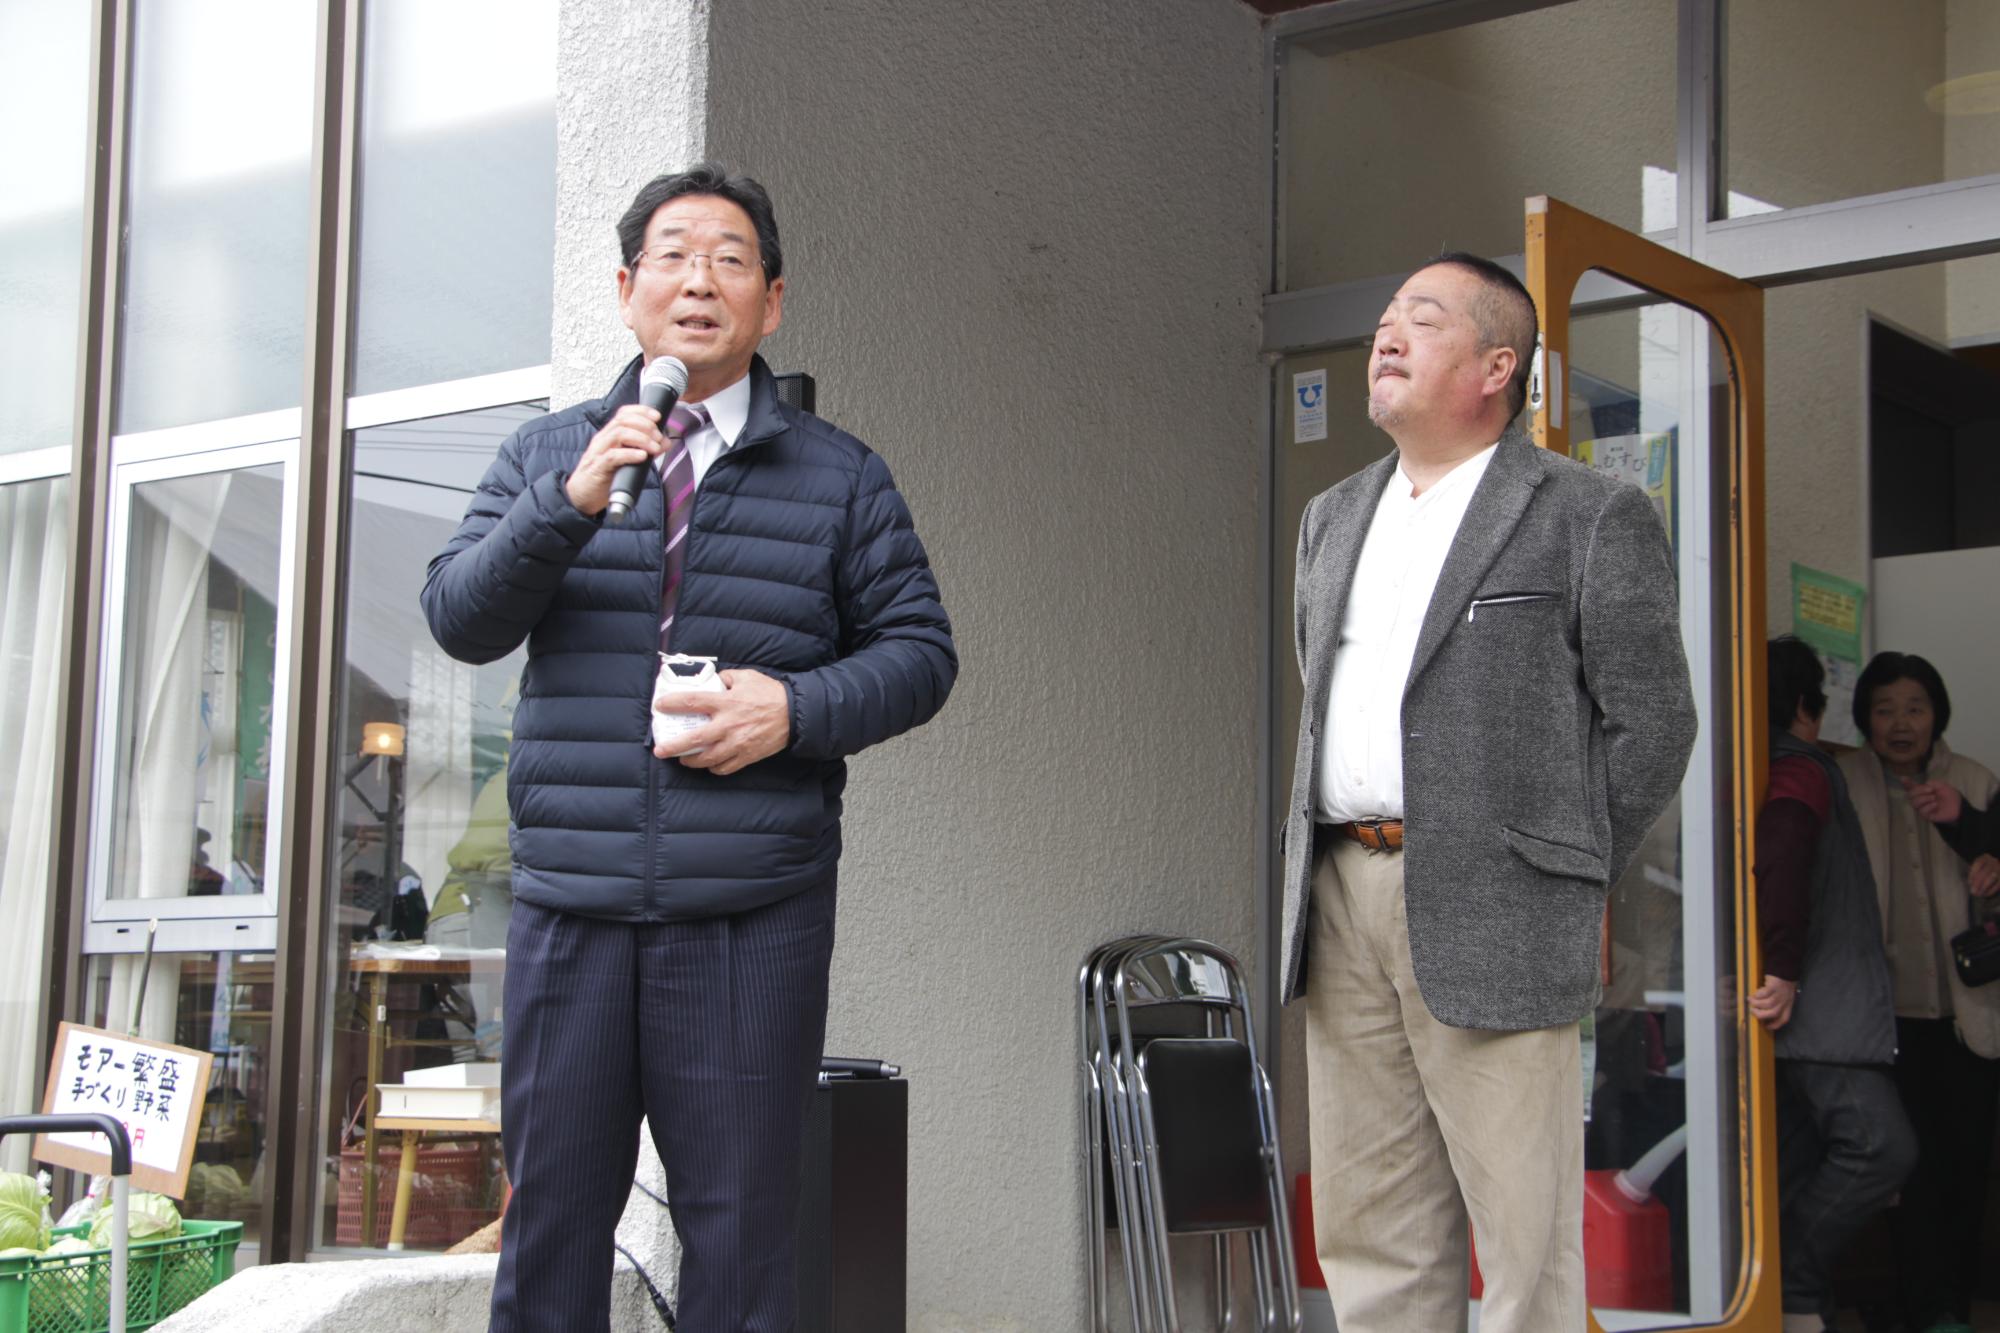 黒いダウンジャケットを着てスピーチをする市長とグレーのジャケットを着た男性の写真